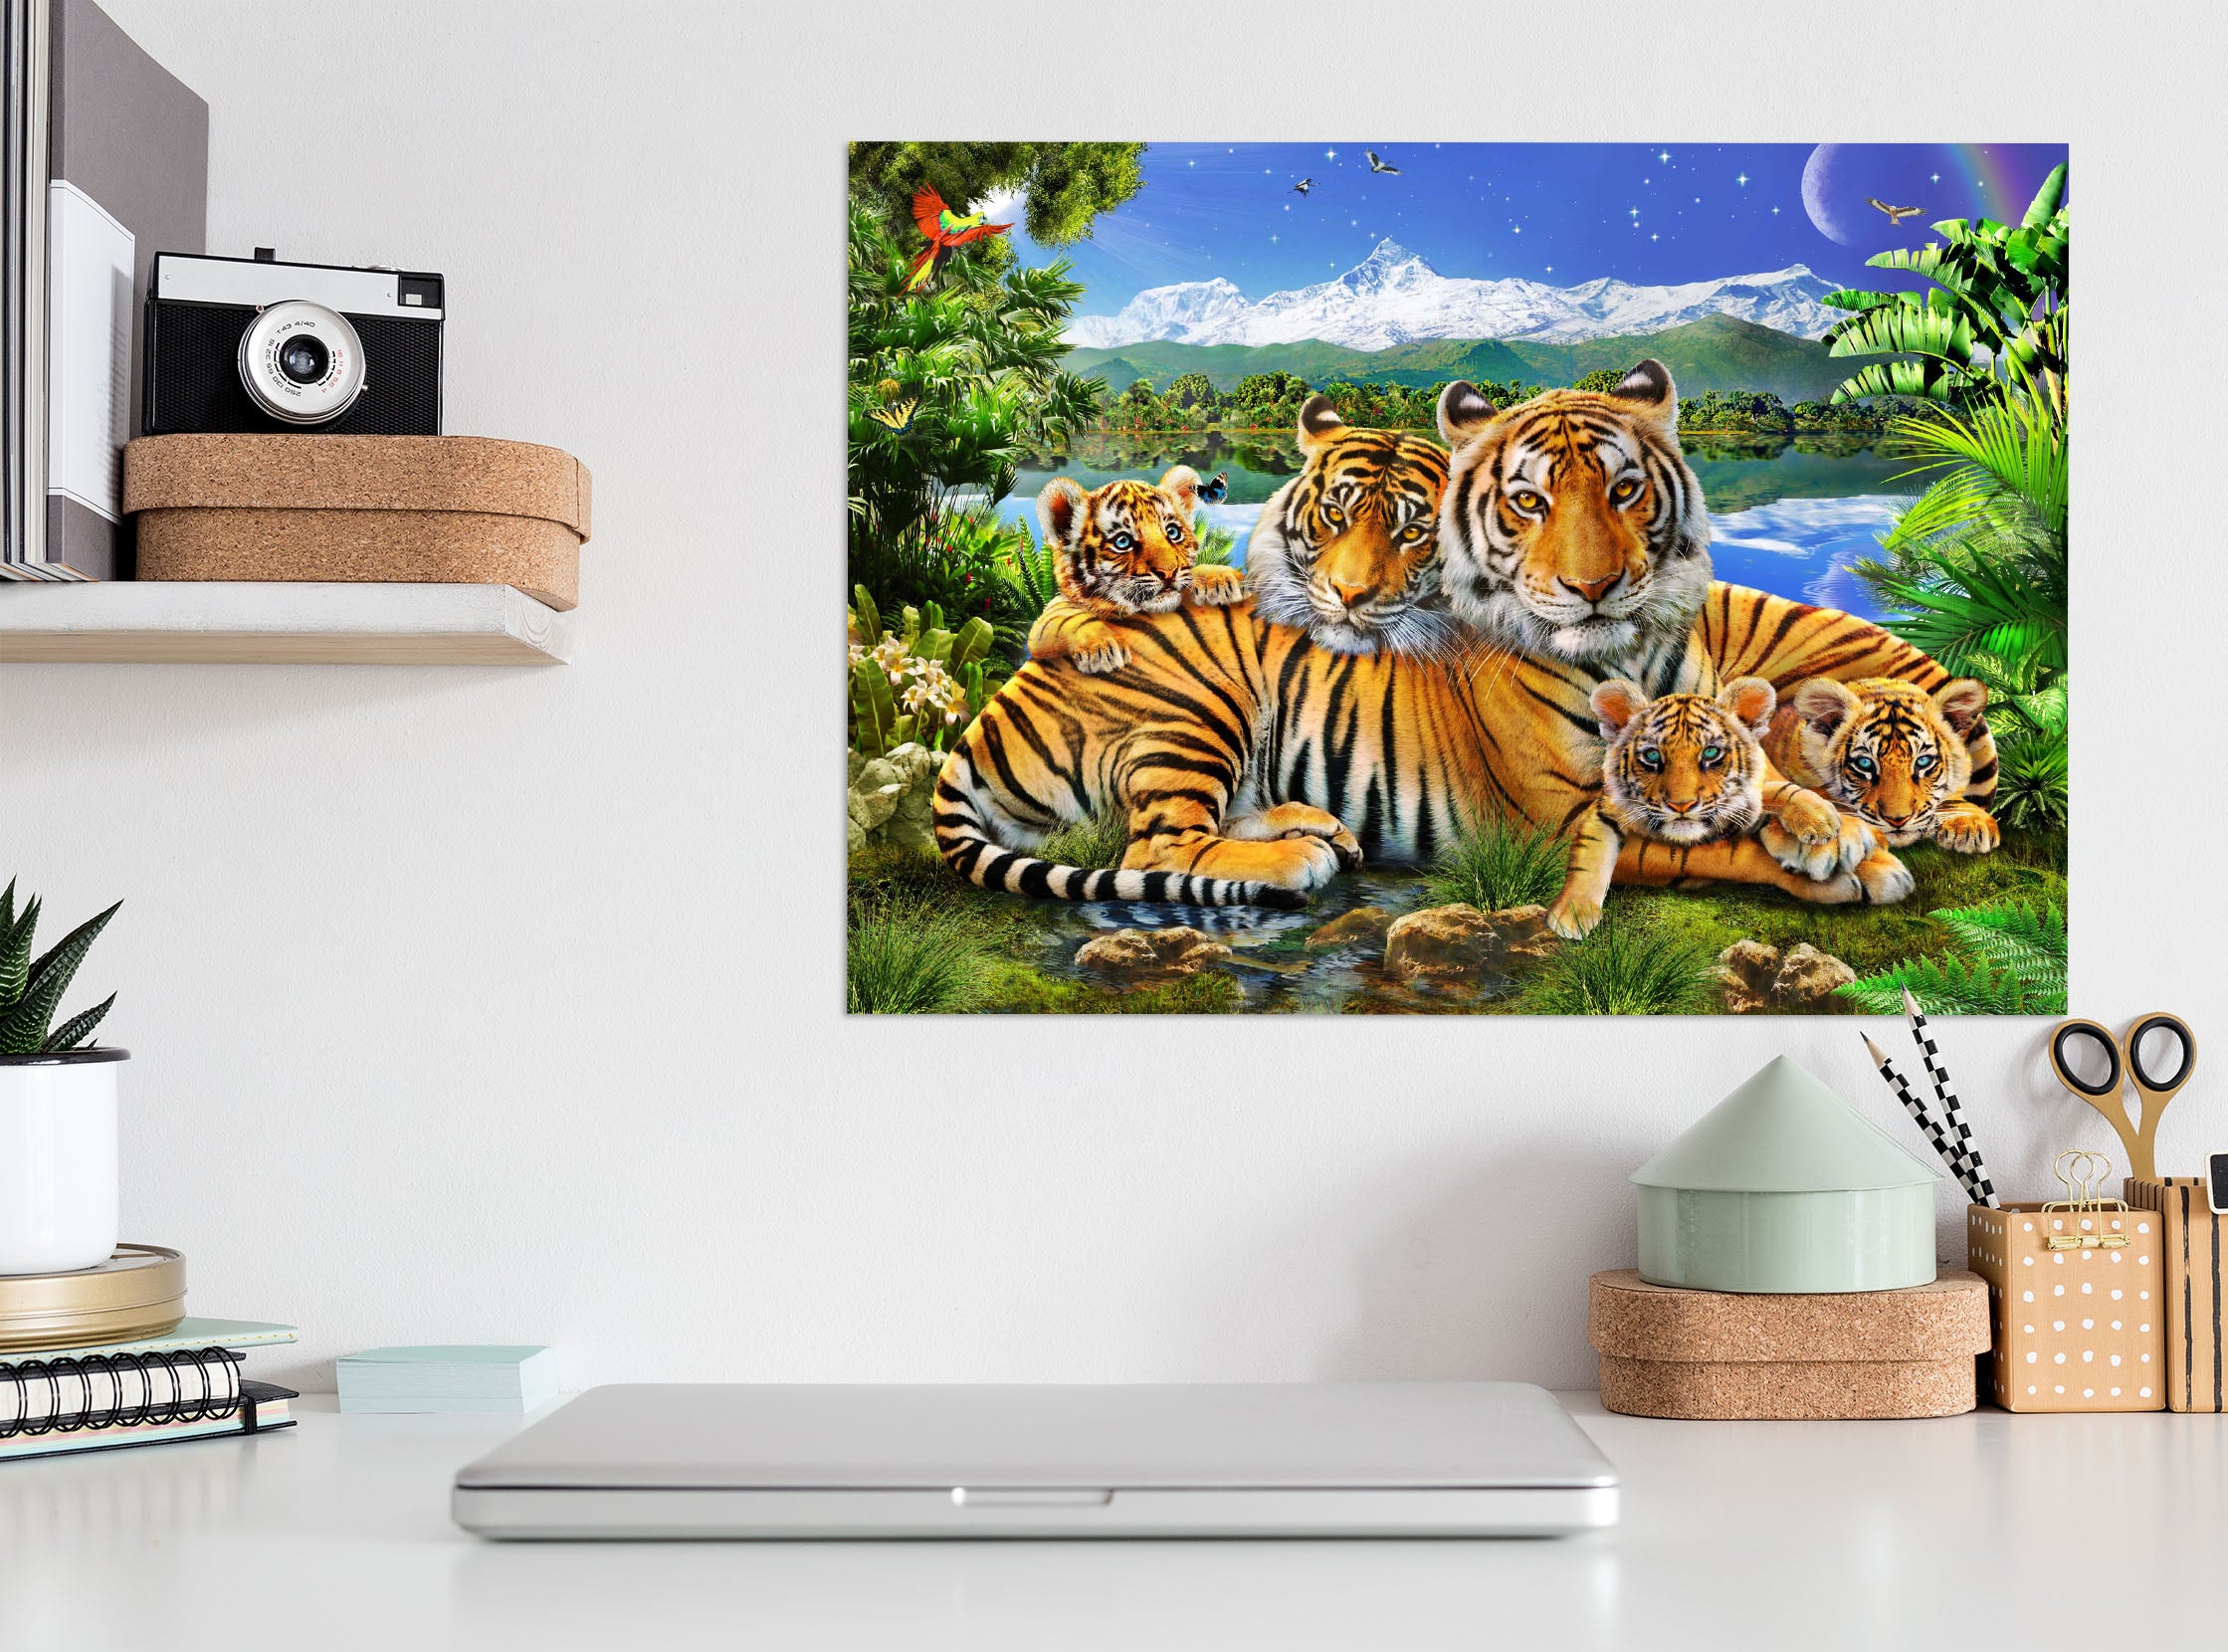 3D Loving Tigers 020 Adrian Chesterman Wall Sticker